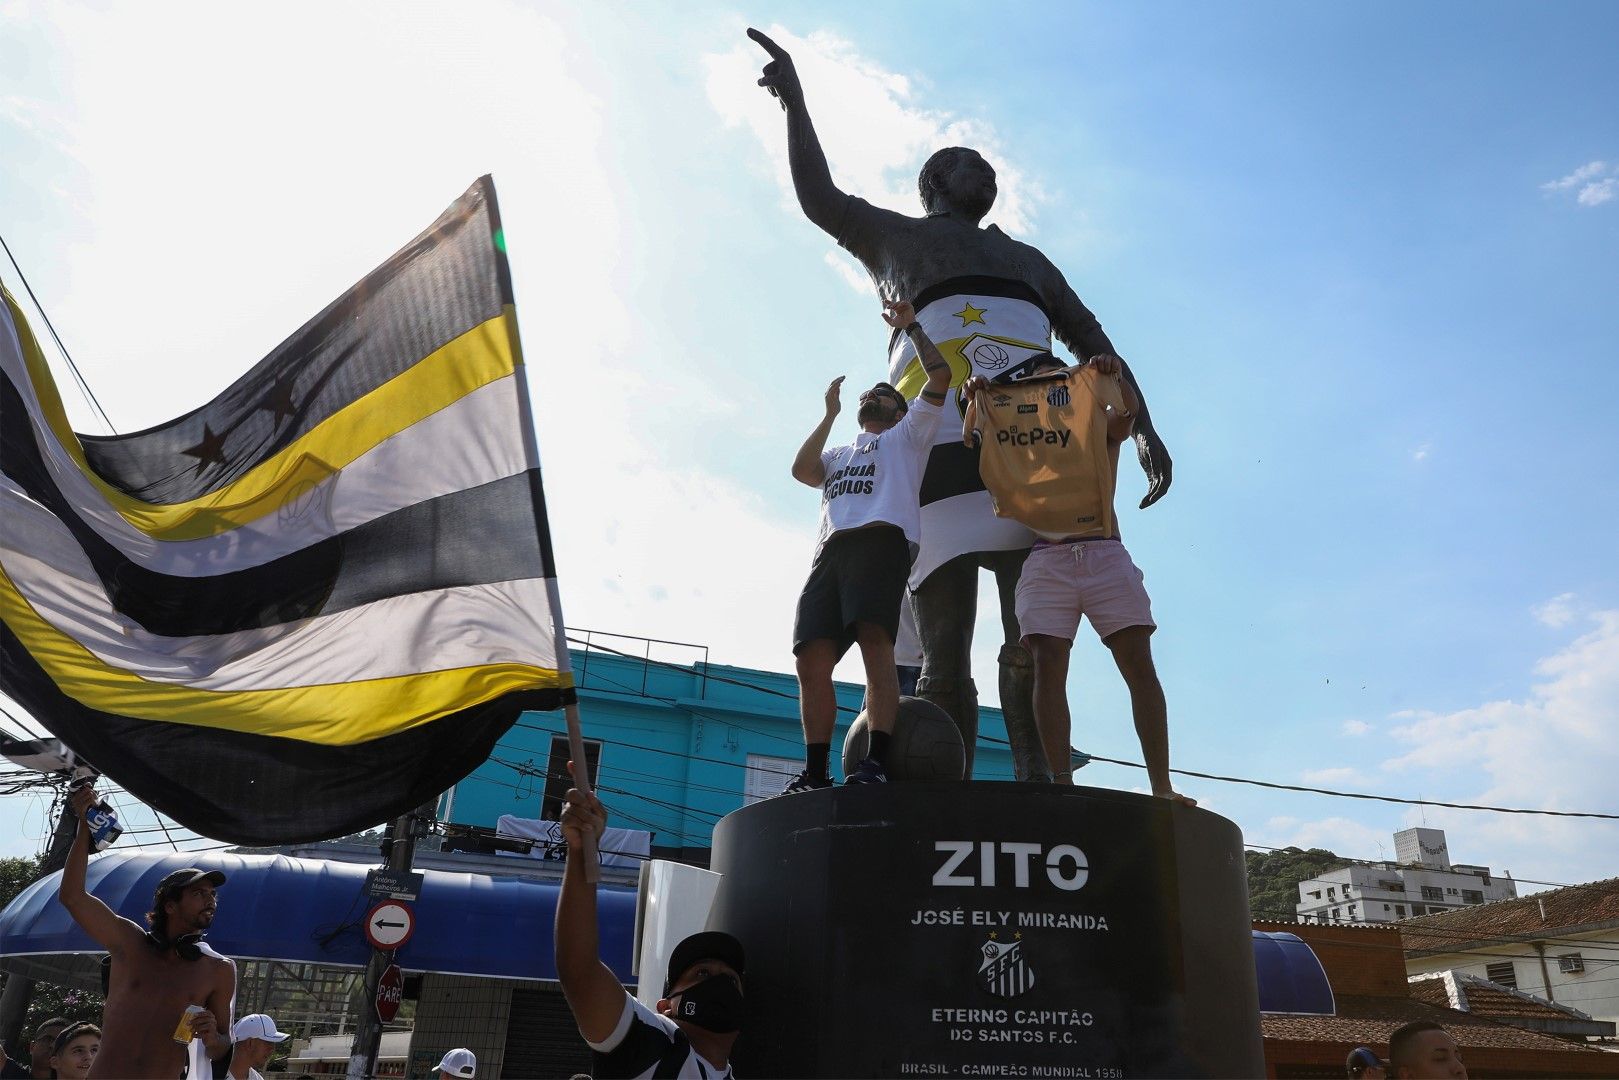 Хиляди се струпаха около стадиона на Сантос и статуите на Зито, Пеле и останалите герои на клуба, още далеч преди мача